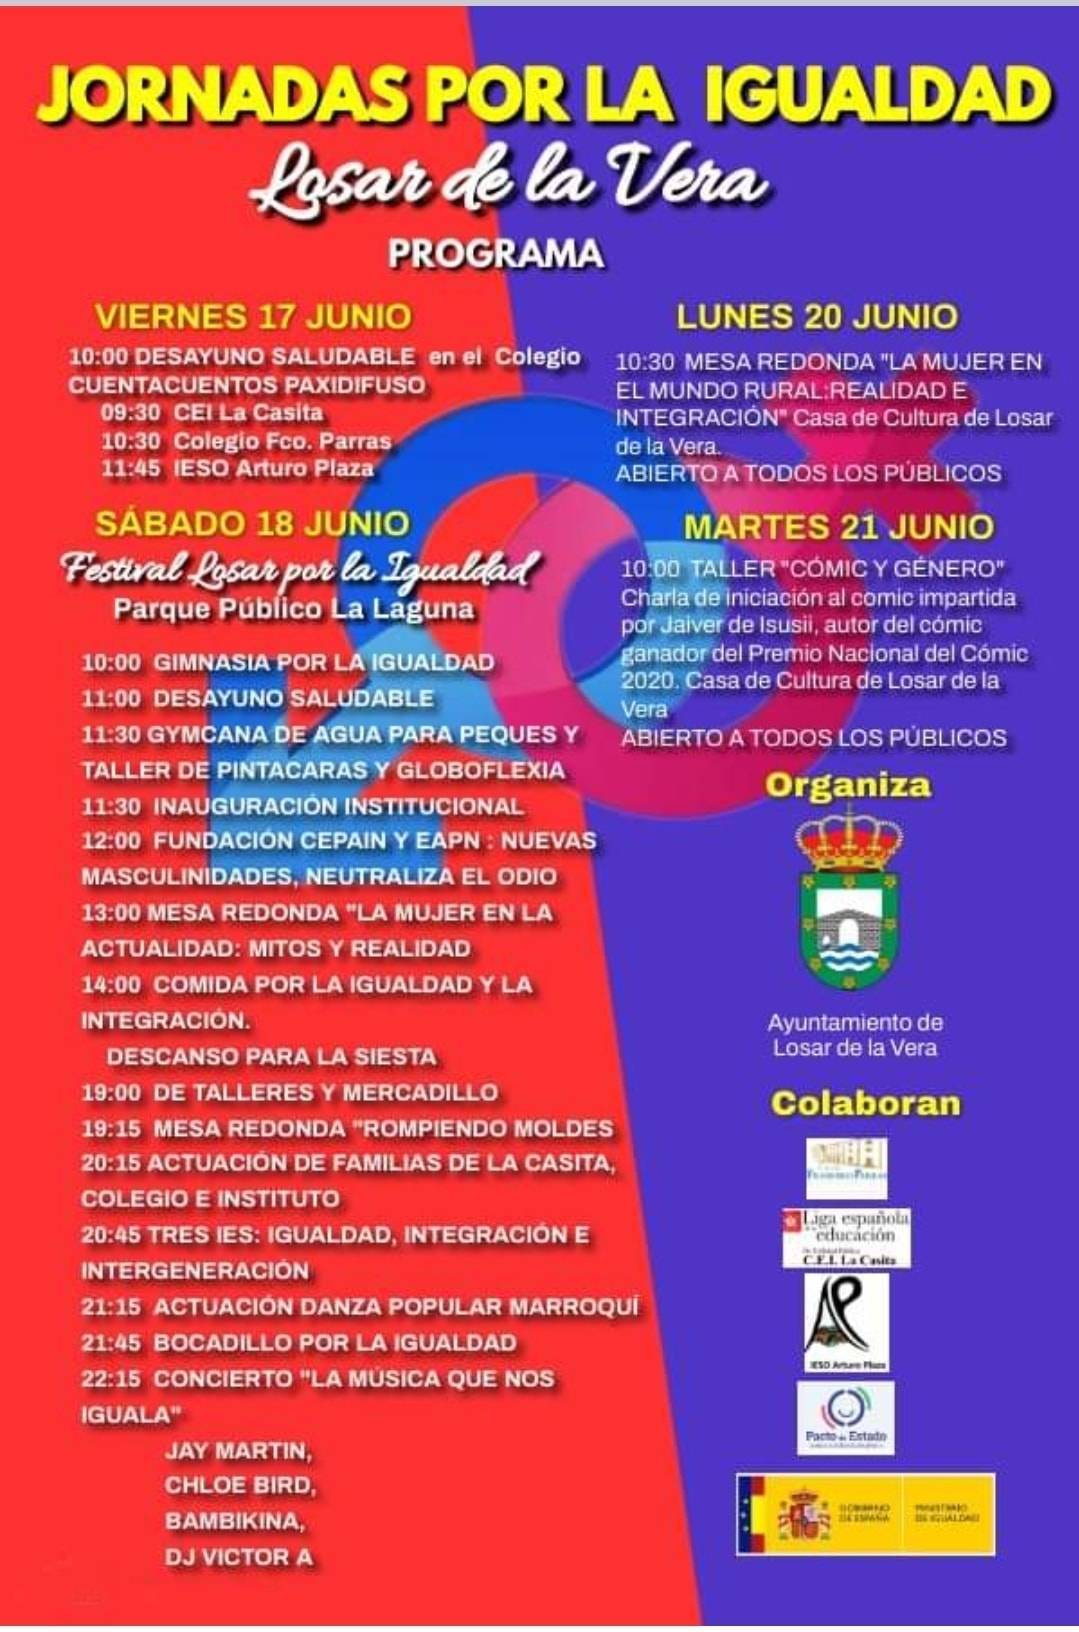 Jornadas por la igualdad (2022) - Losar de la Vera (Cáceres)